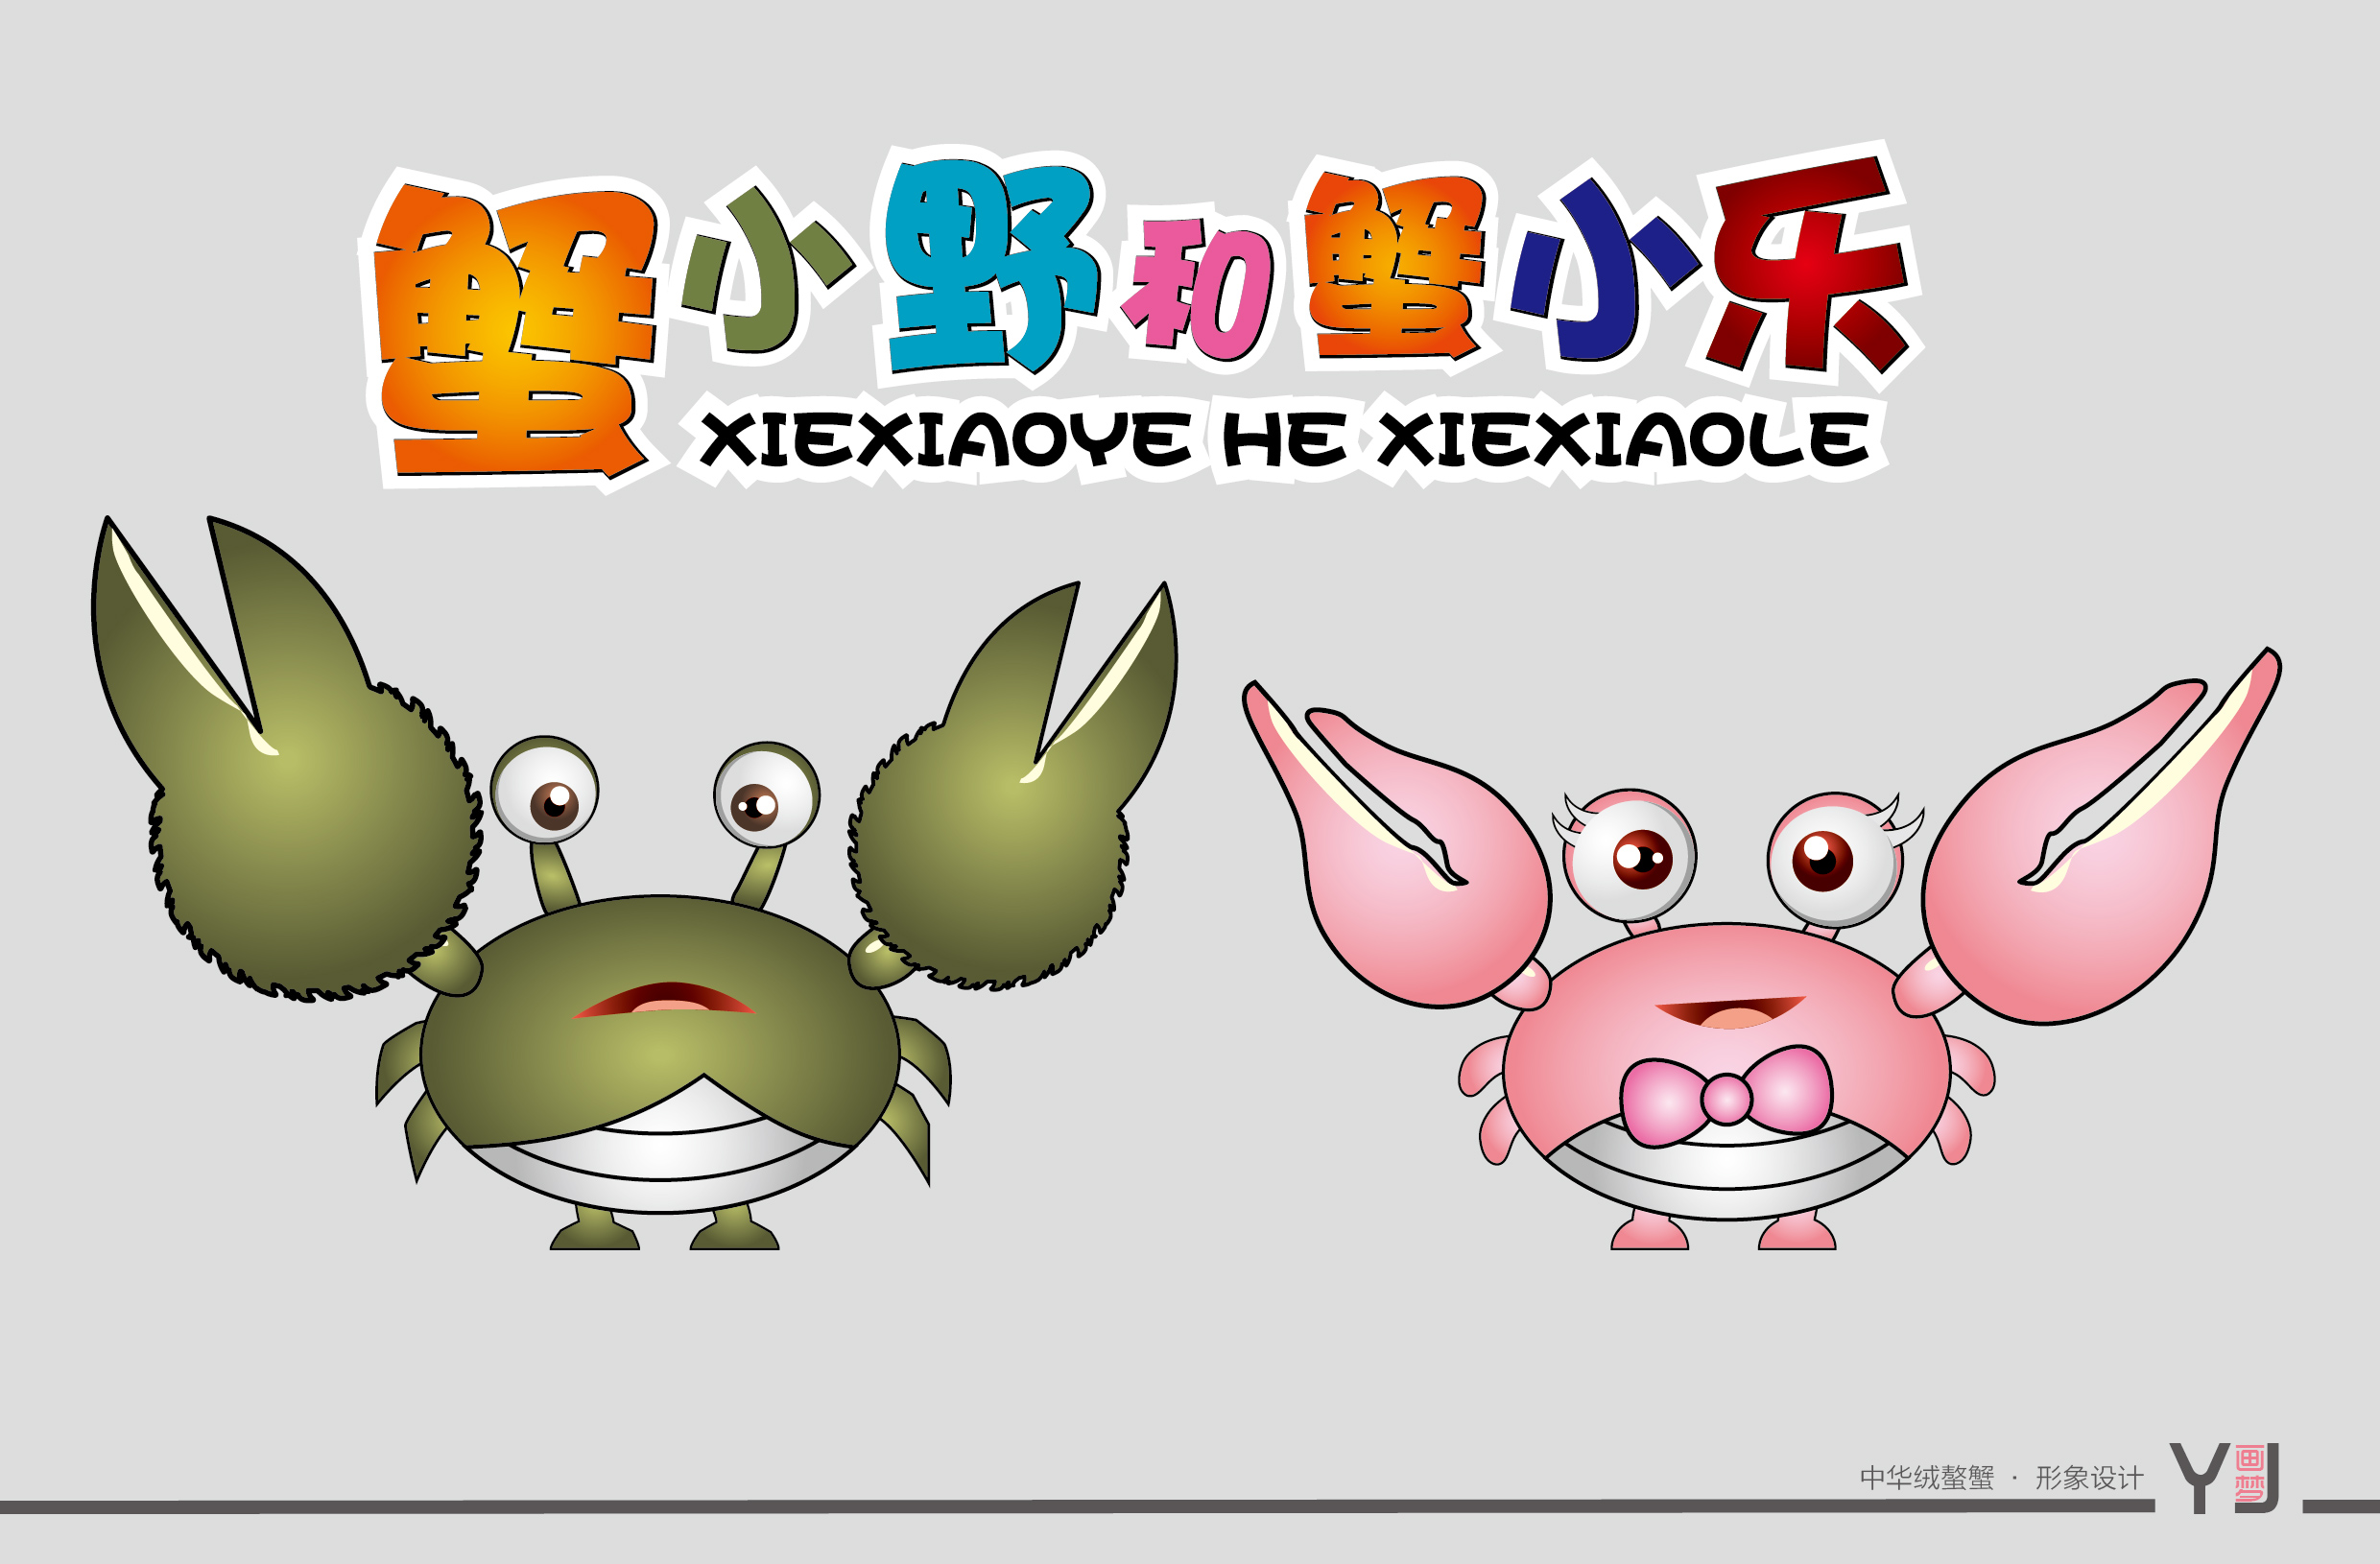 中华绒螯蟹螃蟹形象设计,可爱呆萌的动物形象和拟人的卡通